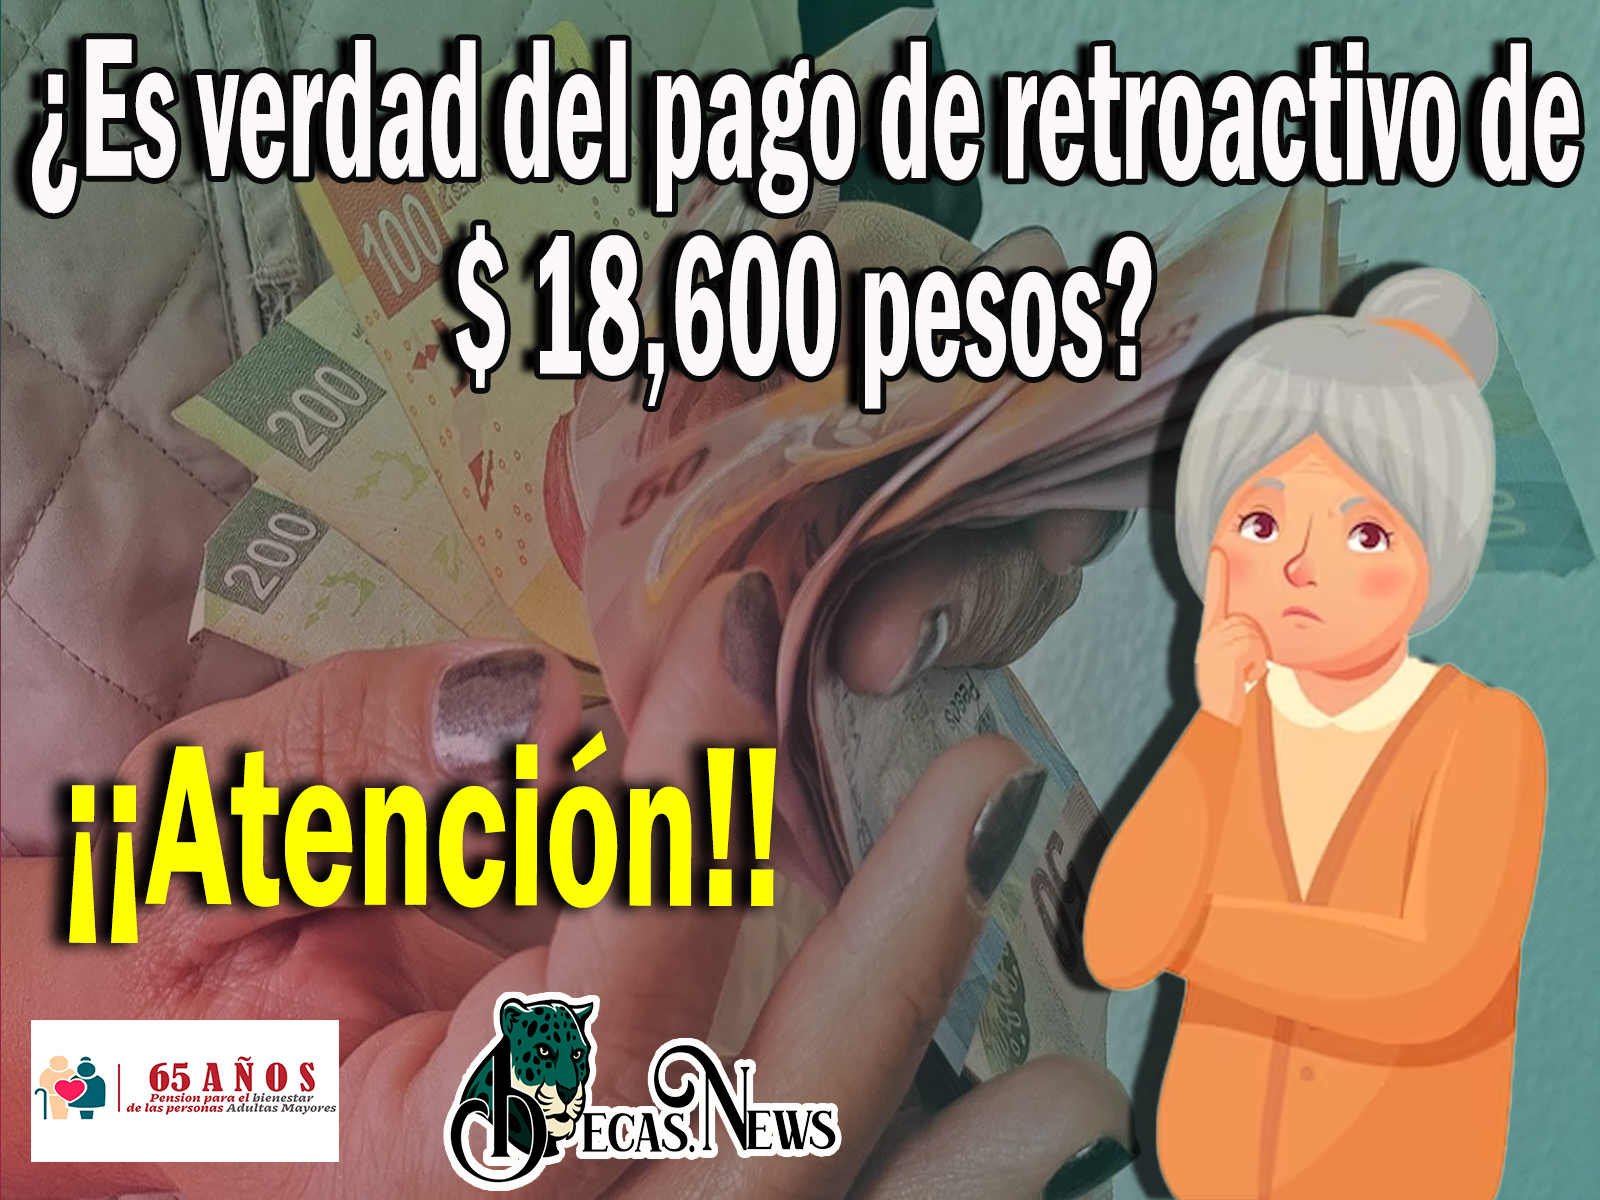 Pensión Bienestar: ¡¡Atención beneficiarios!! ¿Es verdad del pago de retroactivo de $ 18,600 pesos? 